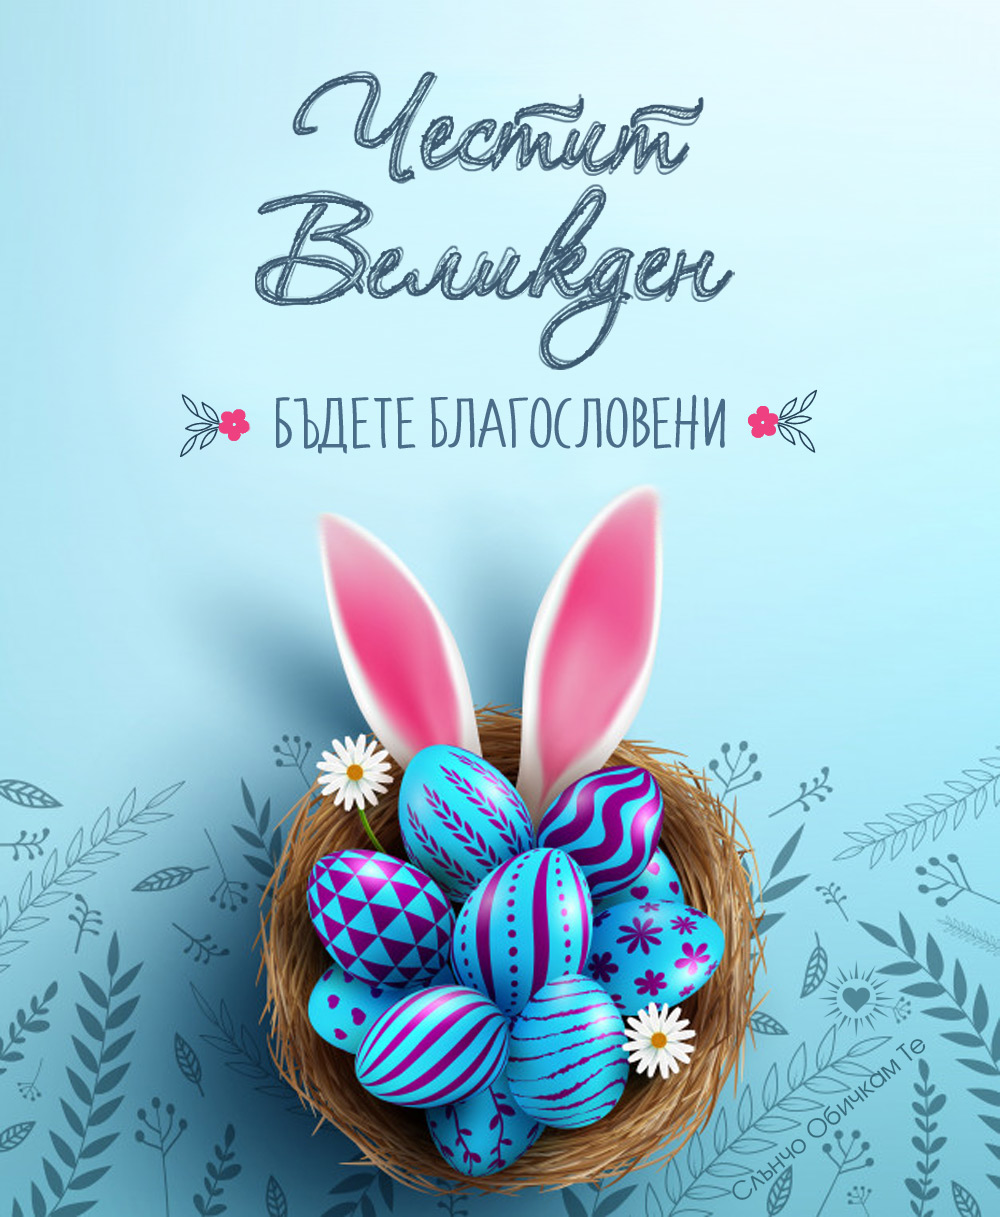 Честит Великден, бъдете благословени - Картички за Великден 2021, весели великденски празници, пожелания за Великден, великденски яйца, перашки, великденски заек, великденско зайче